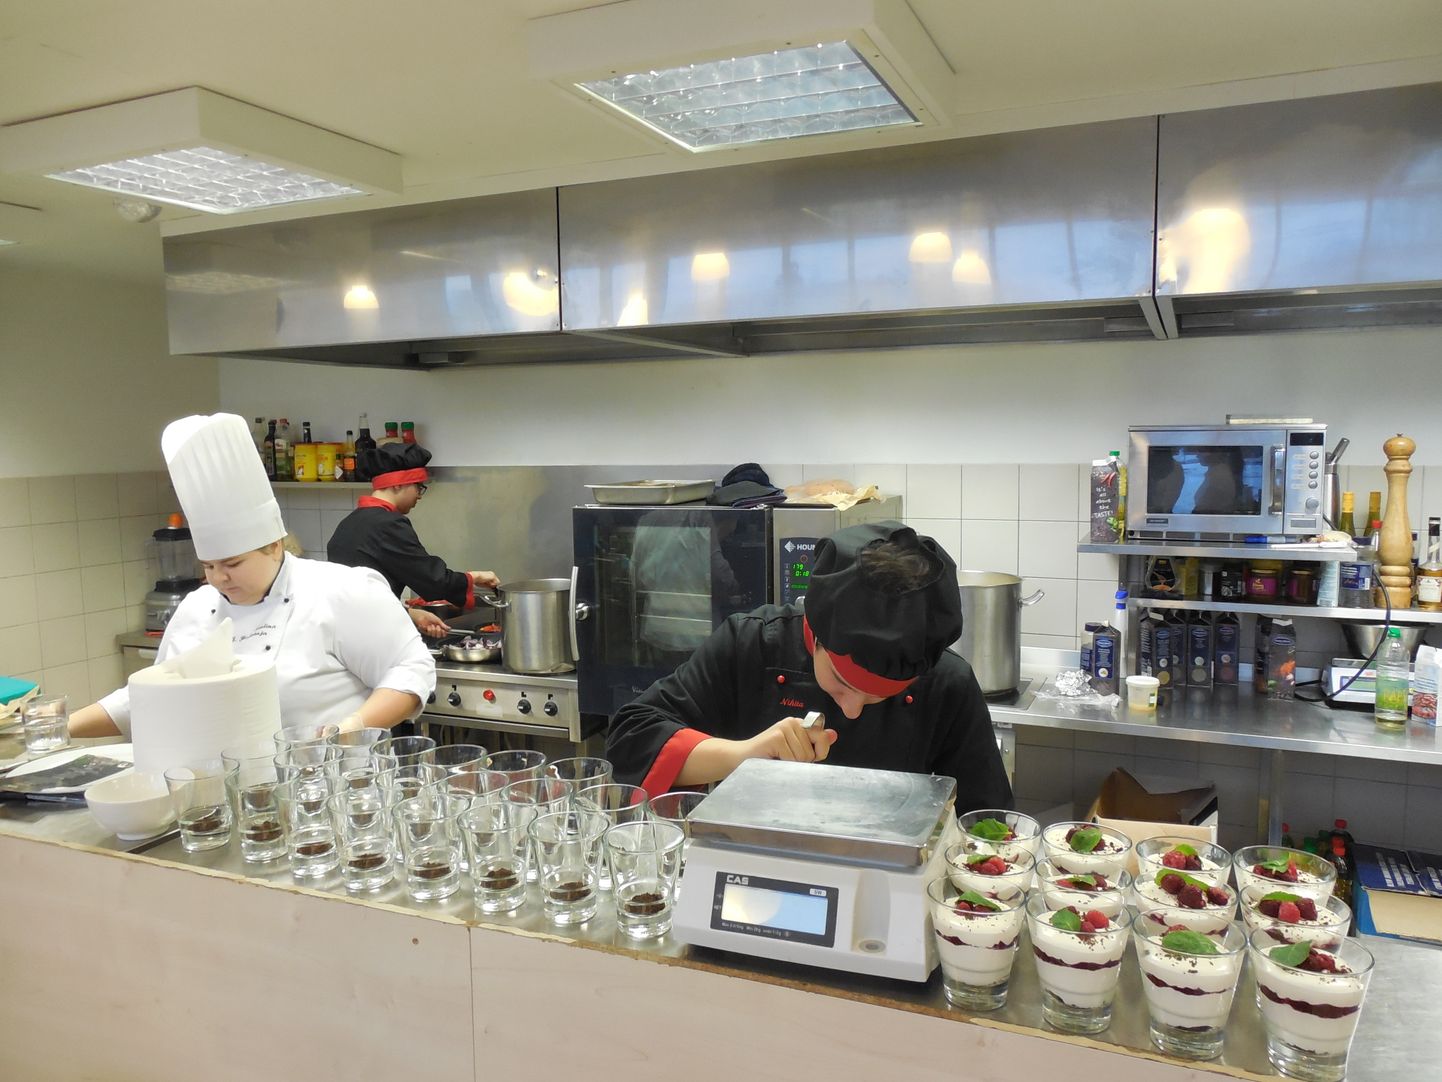 В ресторане "Manufaktuur", работающем в Нарвском отделении Ида-Вирумааского профцентра, практикуются будущие повара - уже много лет эта специальность остается самой популярной у абитуриентов.